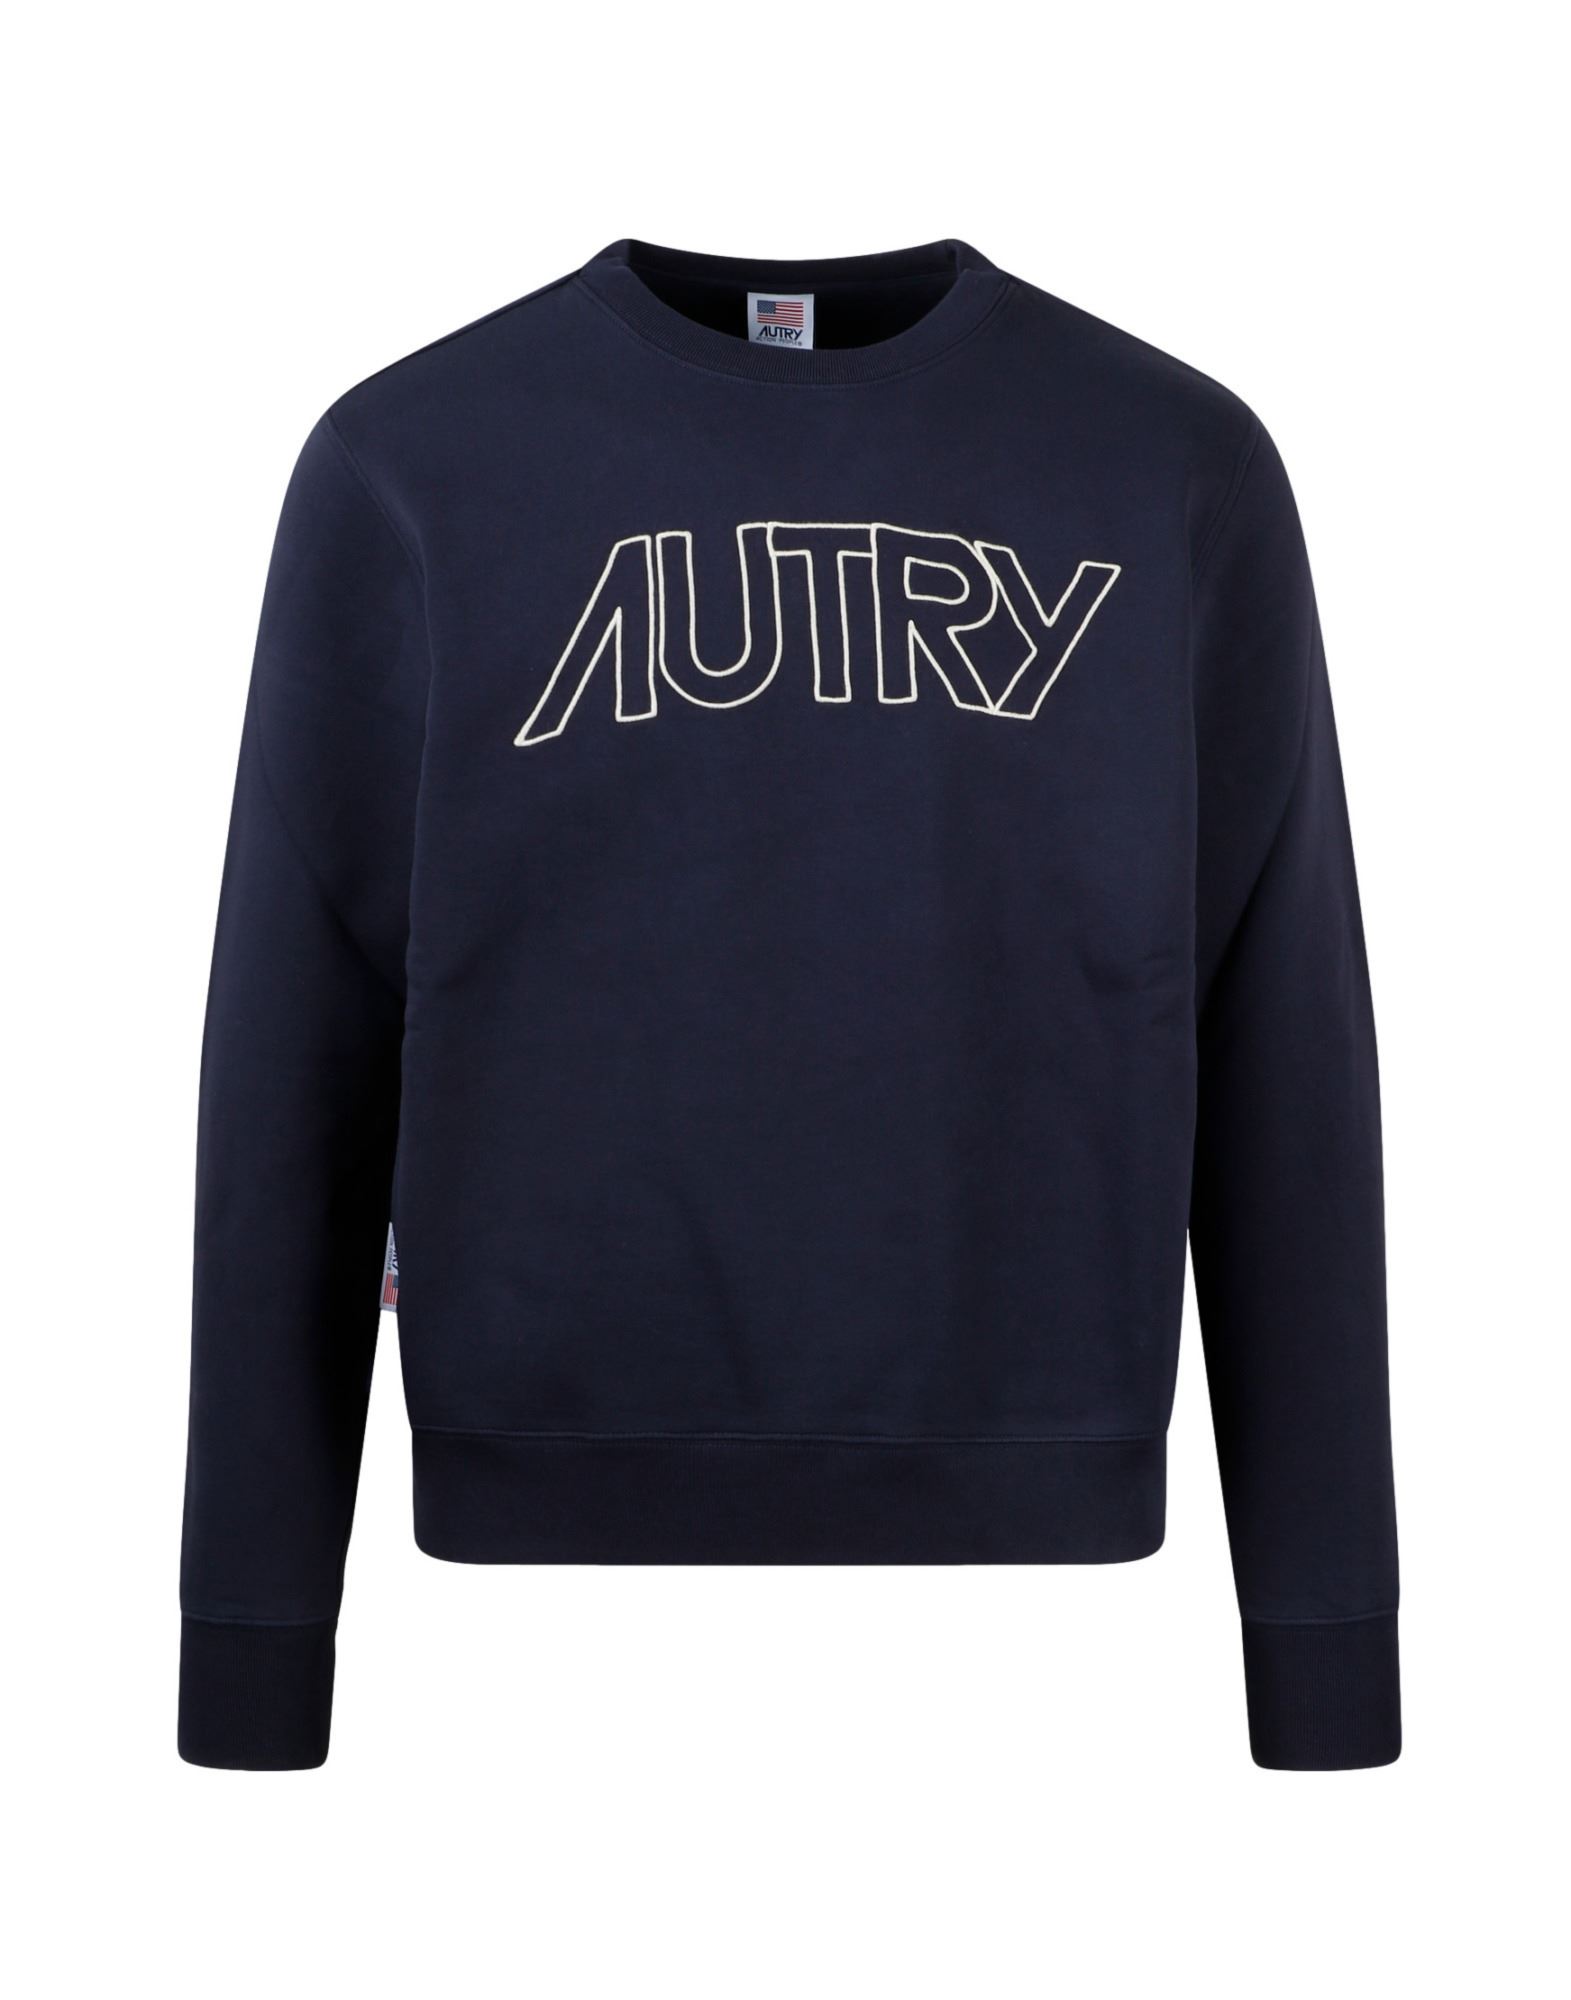 AUTRY Sweatshirt Herren Blau von AUTRY